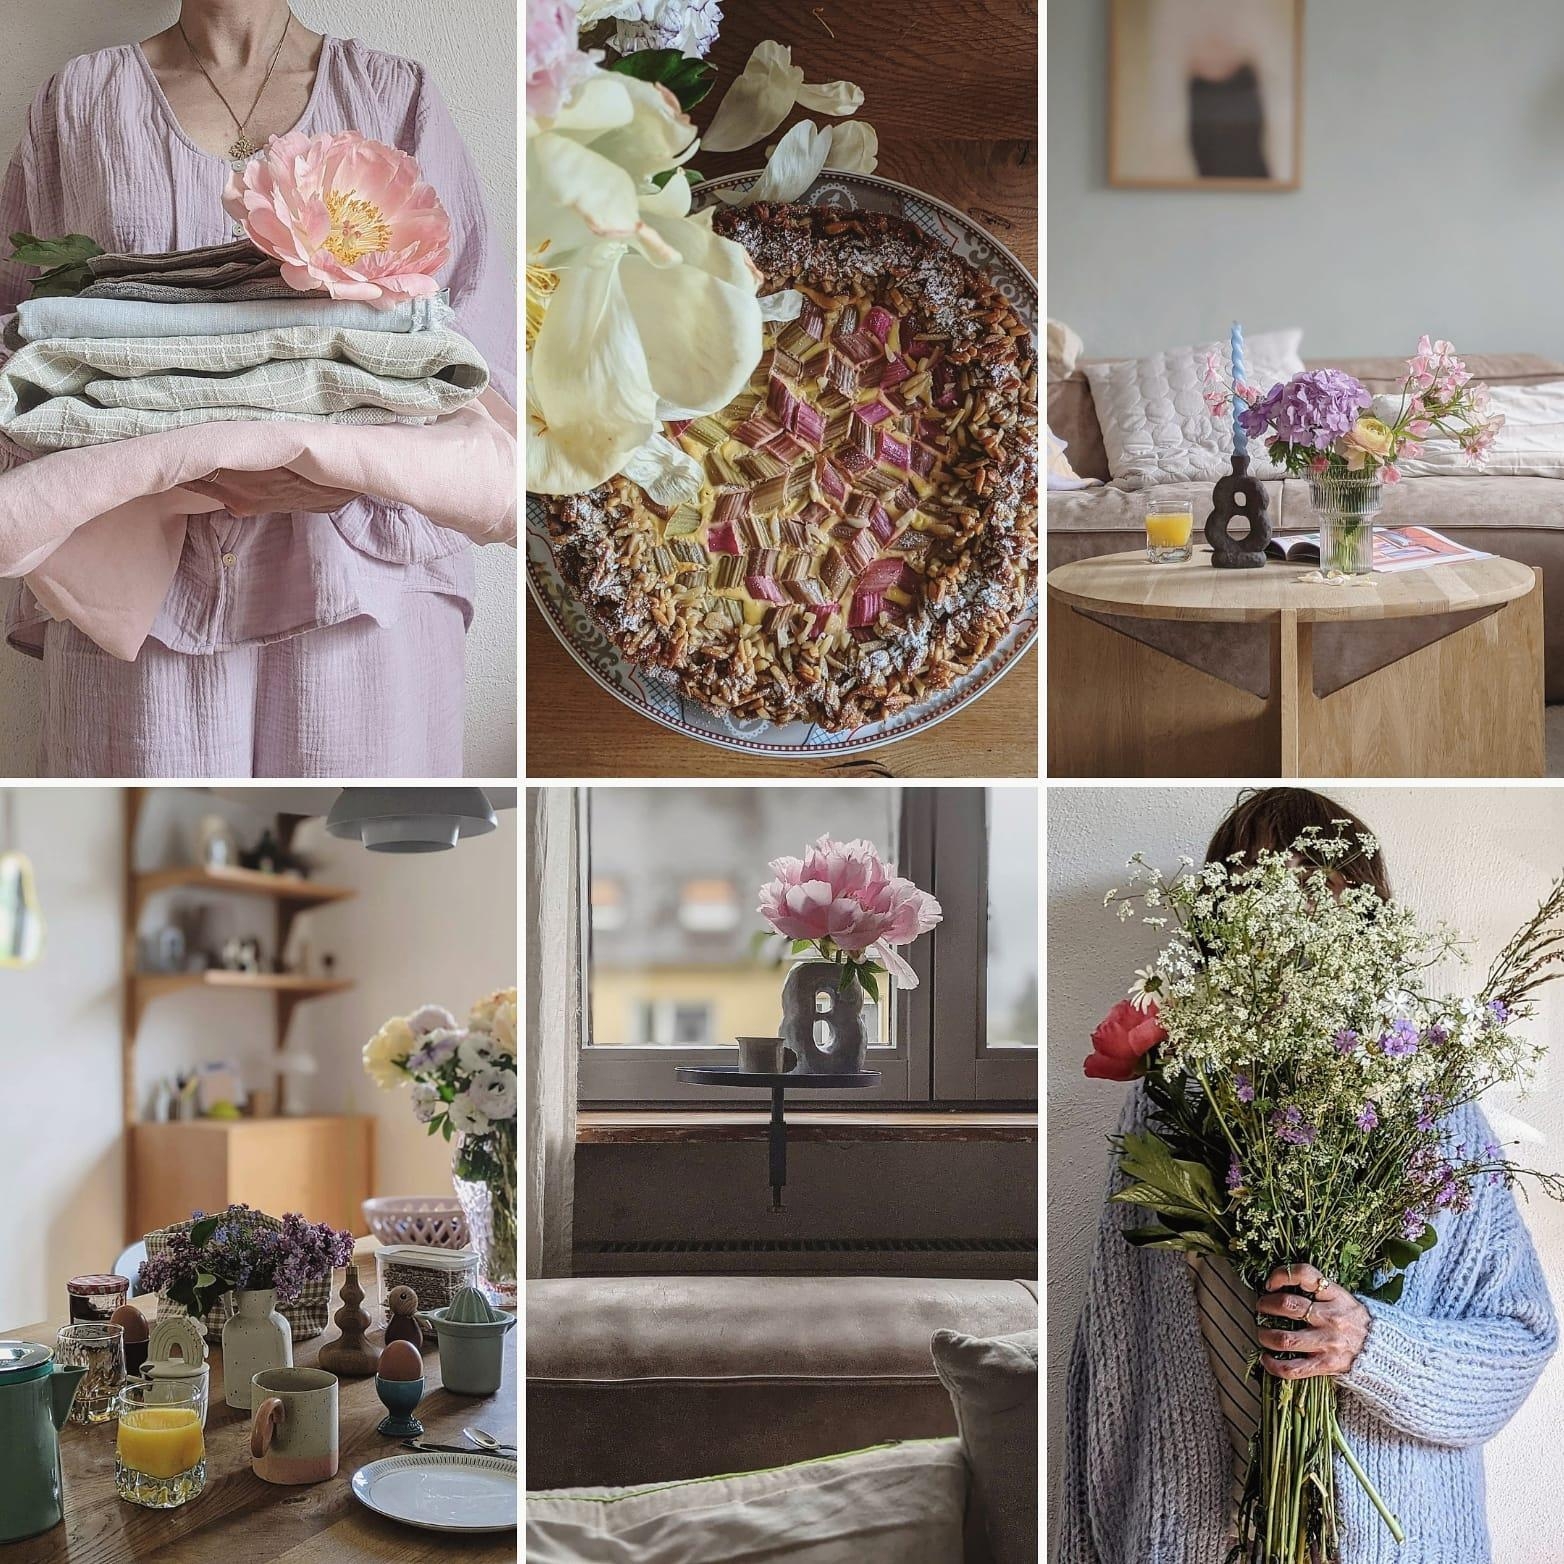 #mai#rückblick#collage#spring#home#interior#wohnen#altbauliebe#couchstyle#scandinavisch#homestory